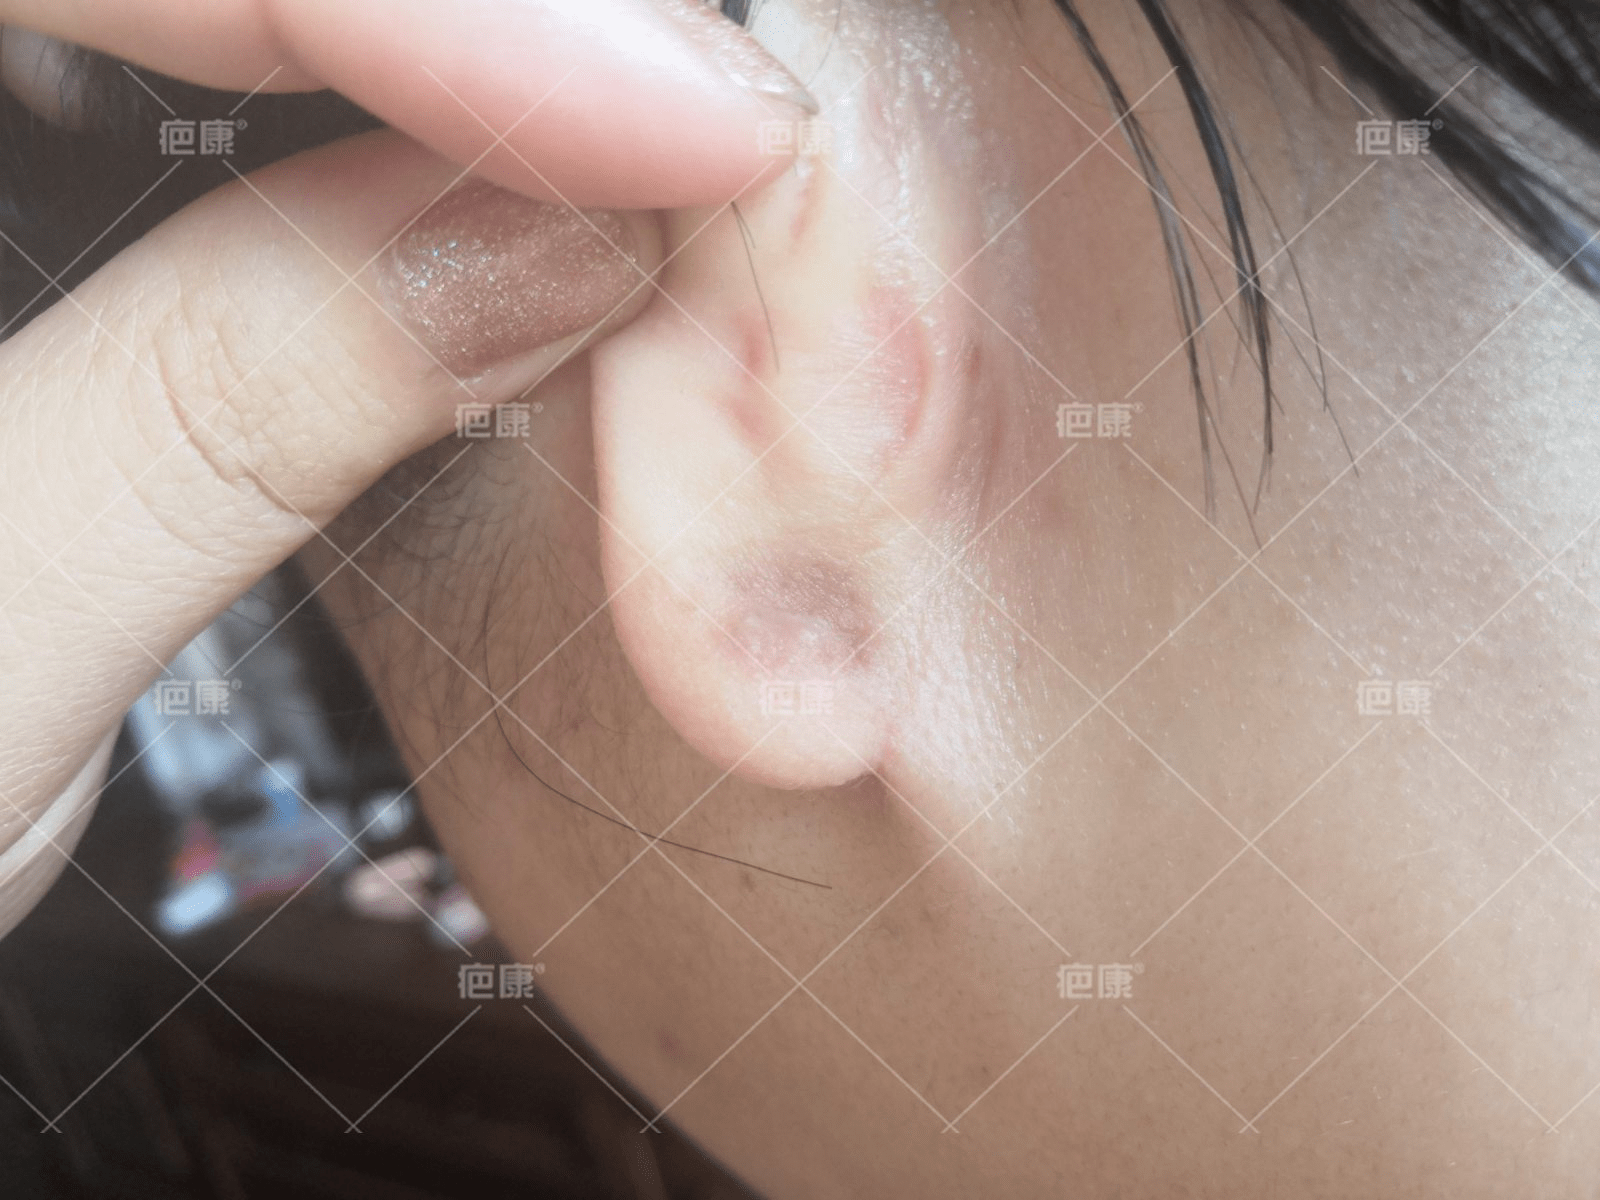 (疤康)耳朵疤痕疙瘩需要做手术吗?